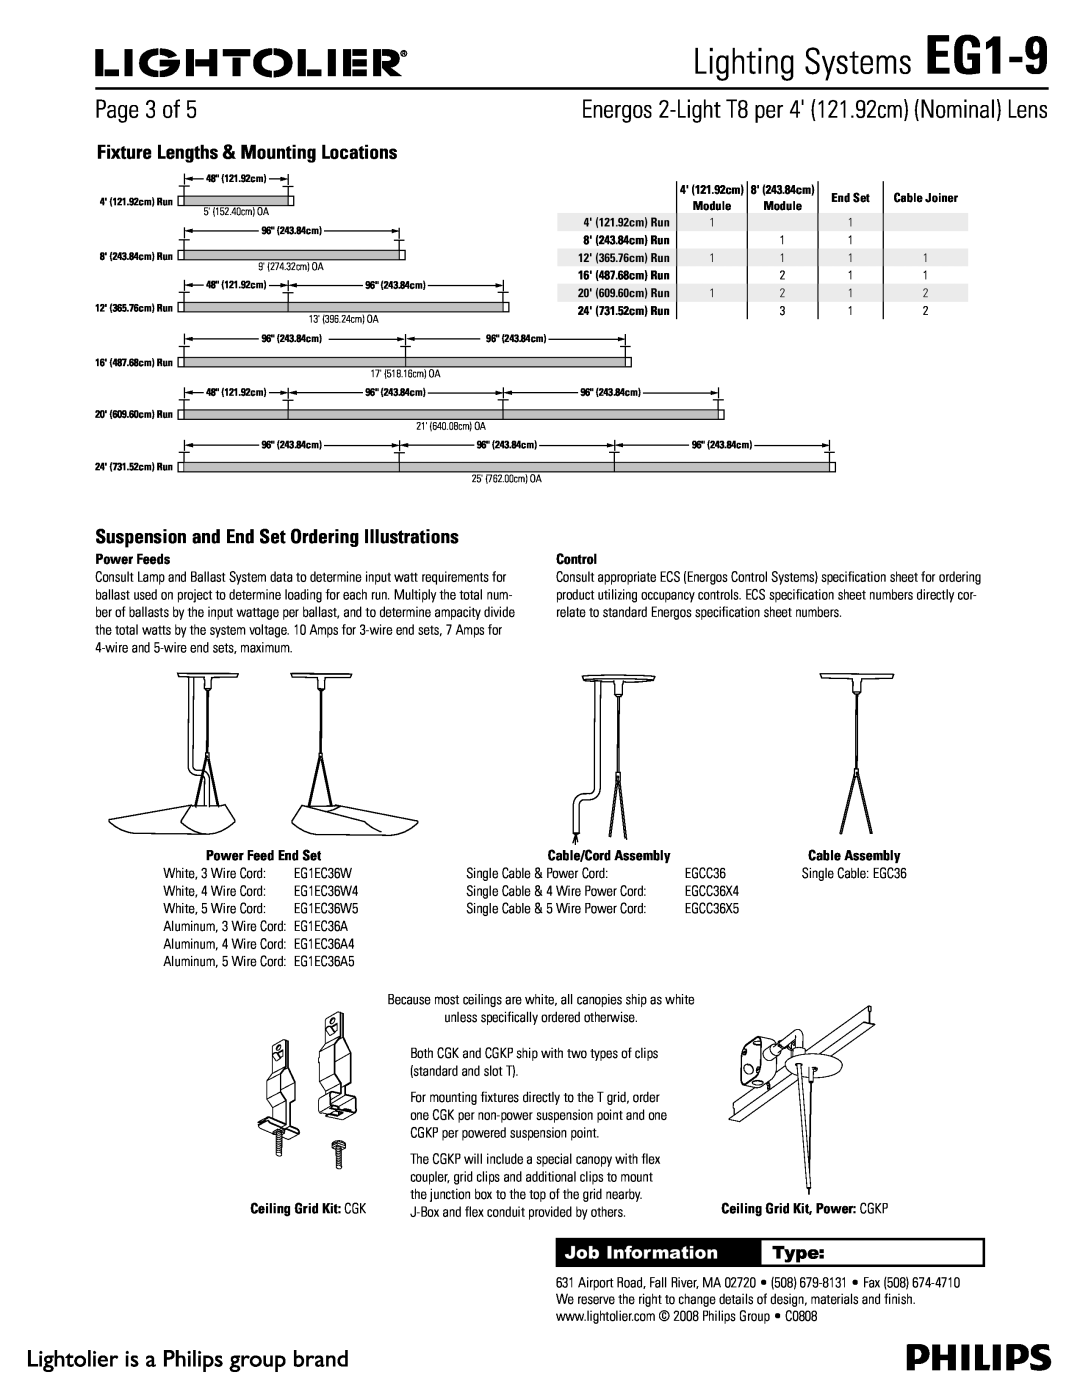 Lightolier 1BHFPG, Lighting Systems EG1-9, Job Information, Type, Ceiling Grid Kit $, 4 121.92cm Run, End Set 